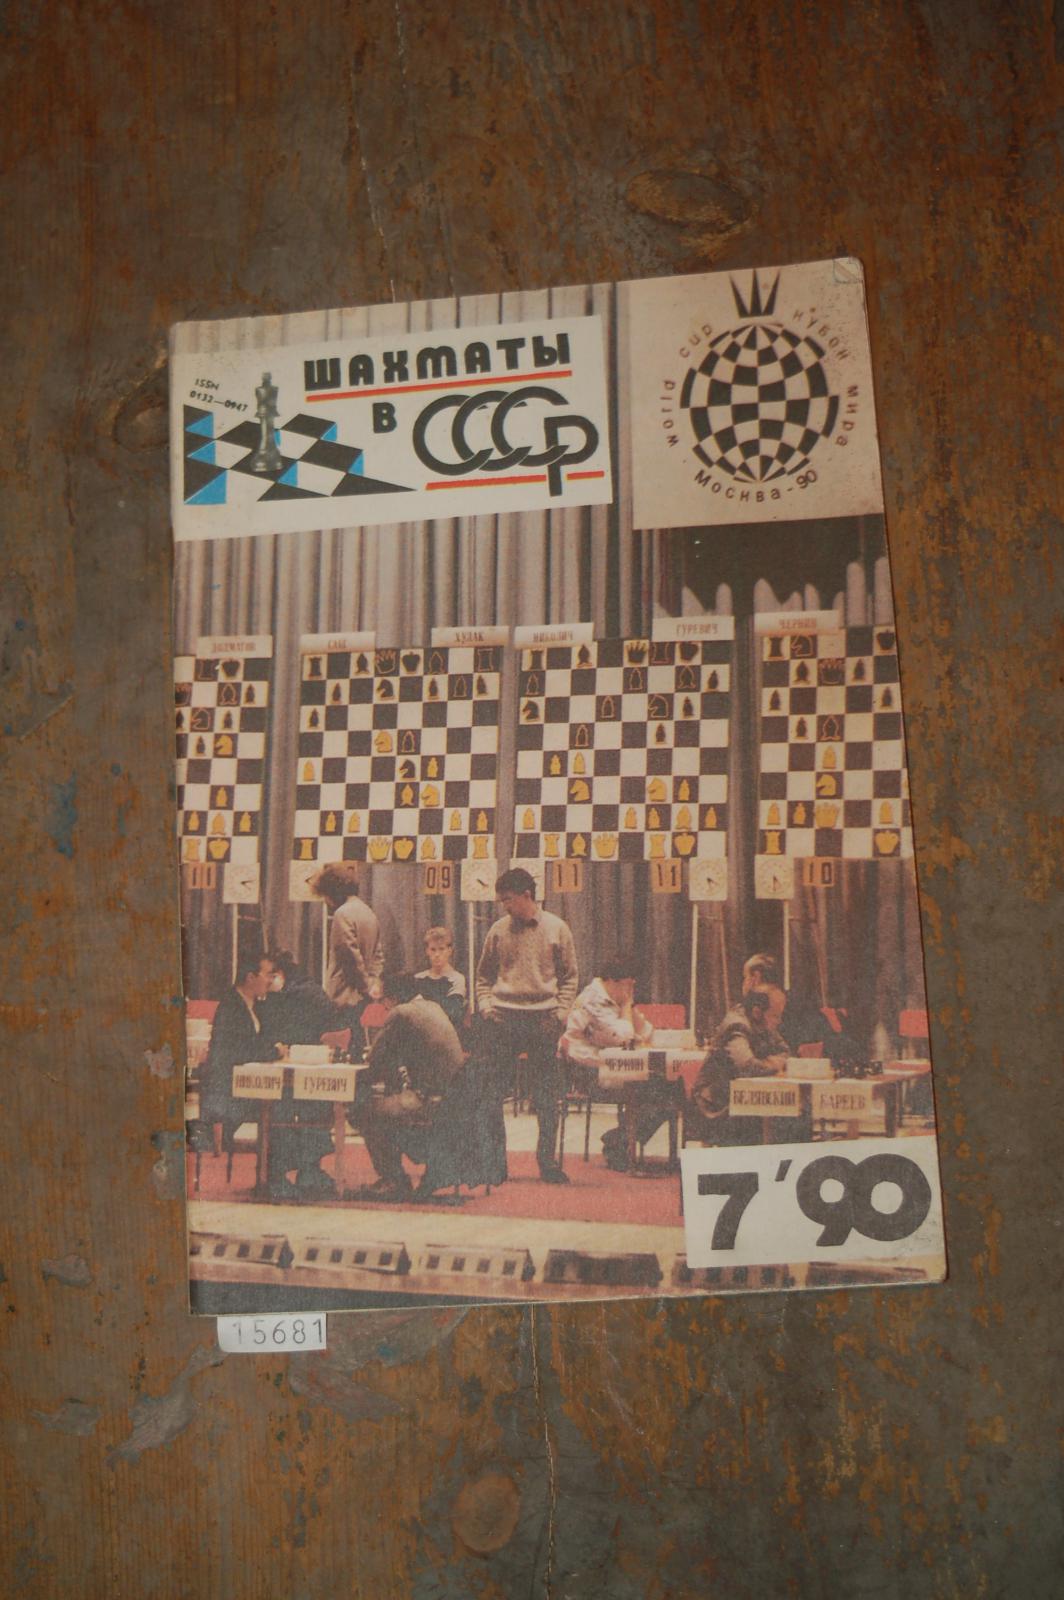 .  schachmaty CCCP 7/90 (russische Schachzeitschrift) 